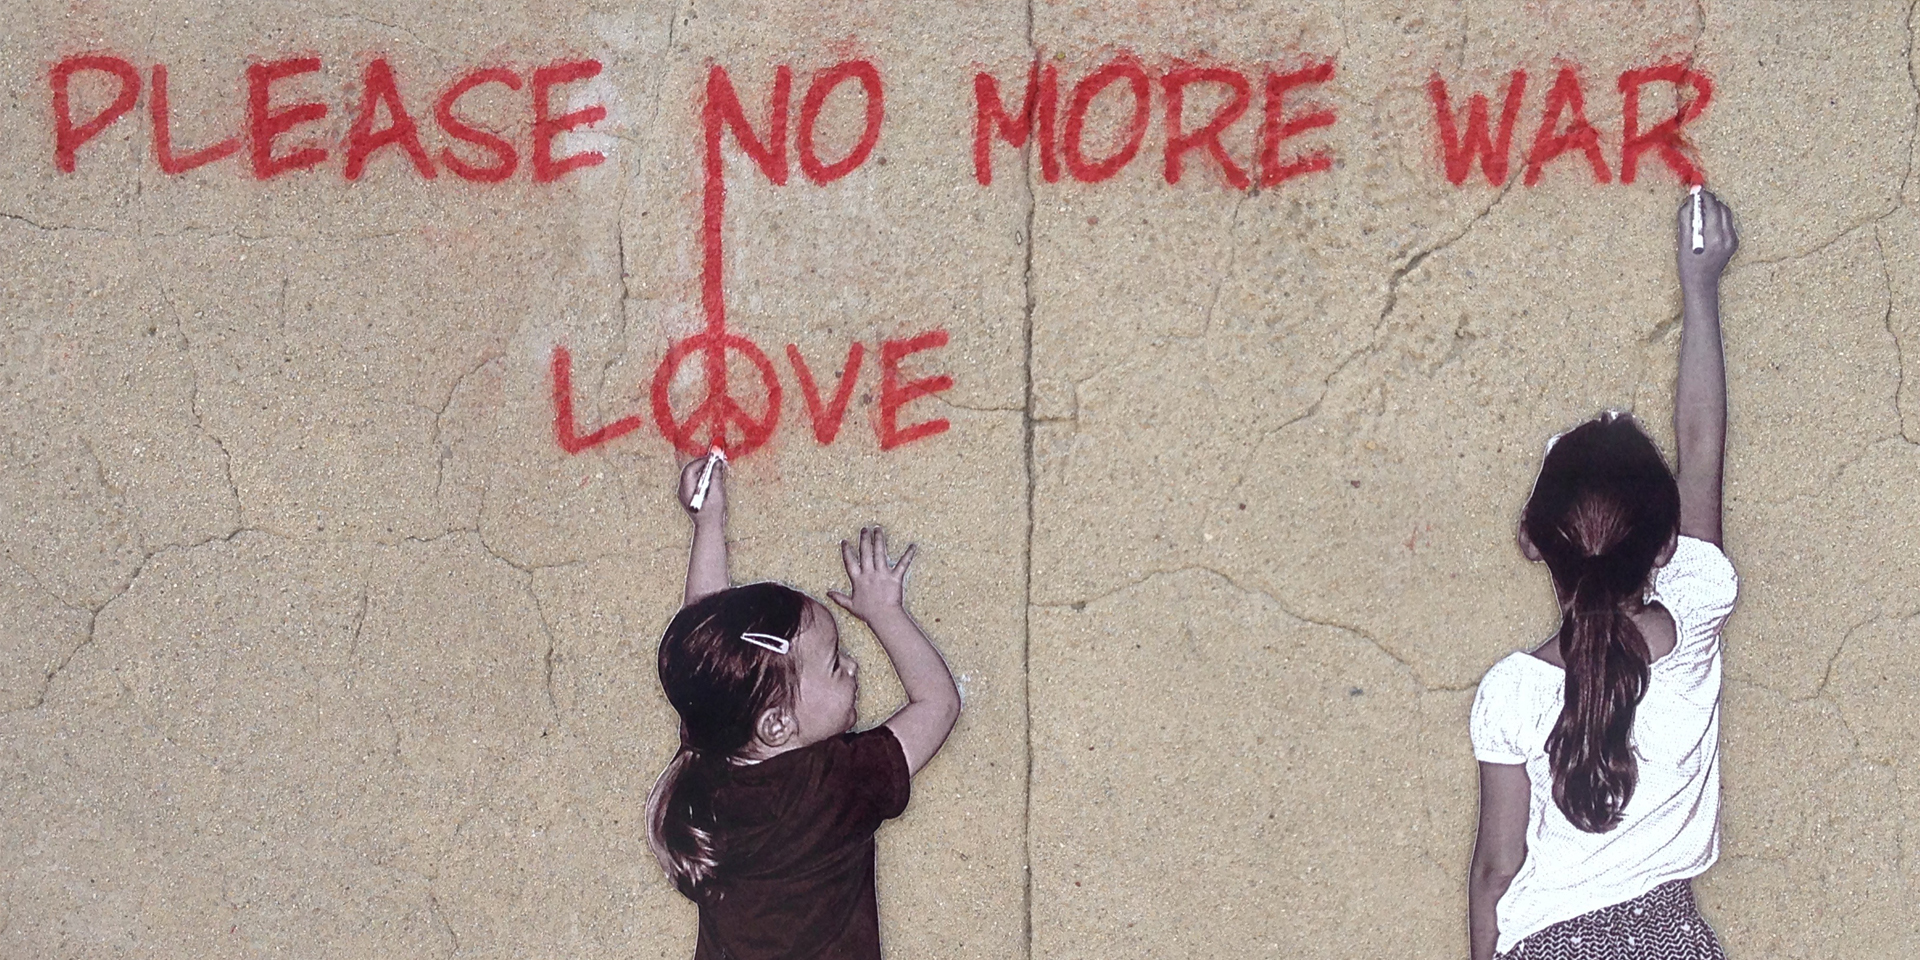 Kinder schreiben 'please no mor war' an eine Wand.,© pixabay/Annette Jones